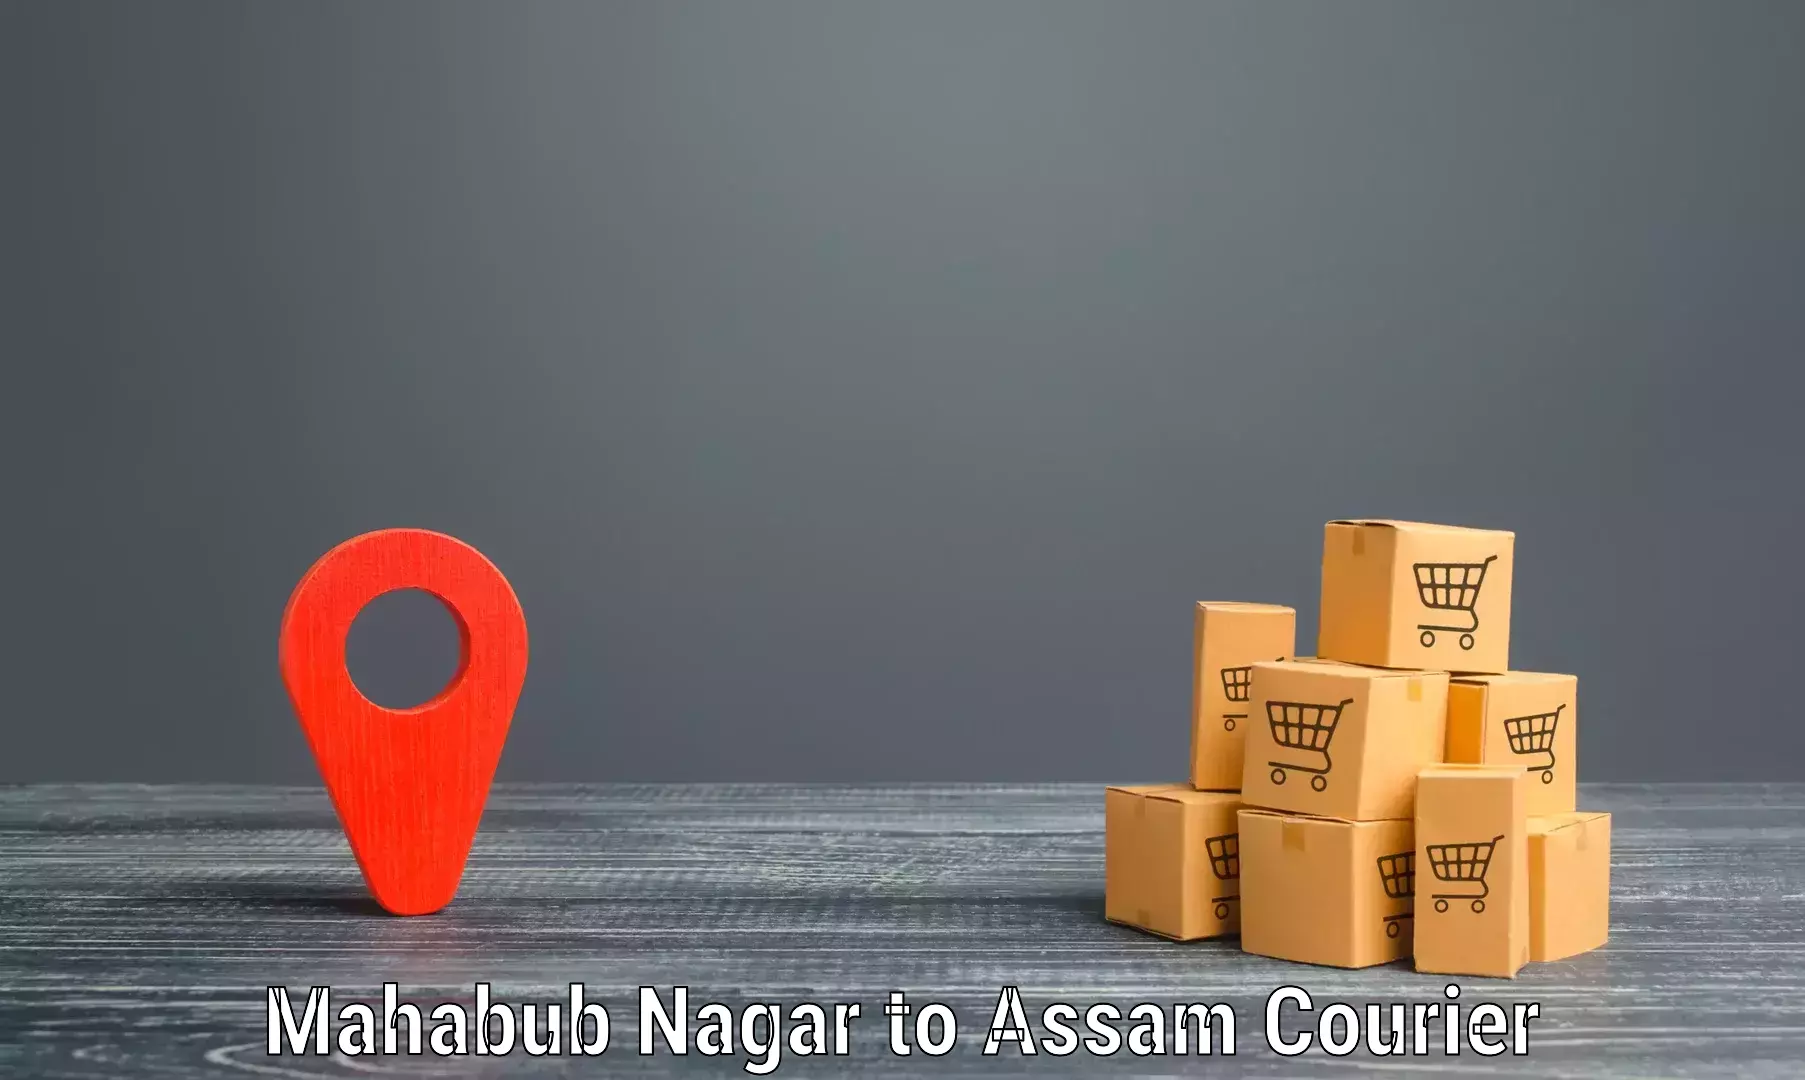 Comprehensive freight services Mahabub Nagar to Moranhat